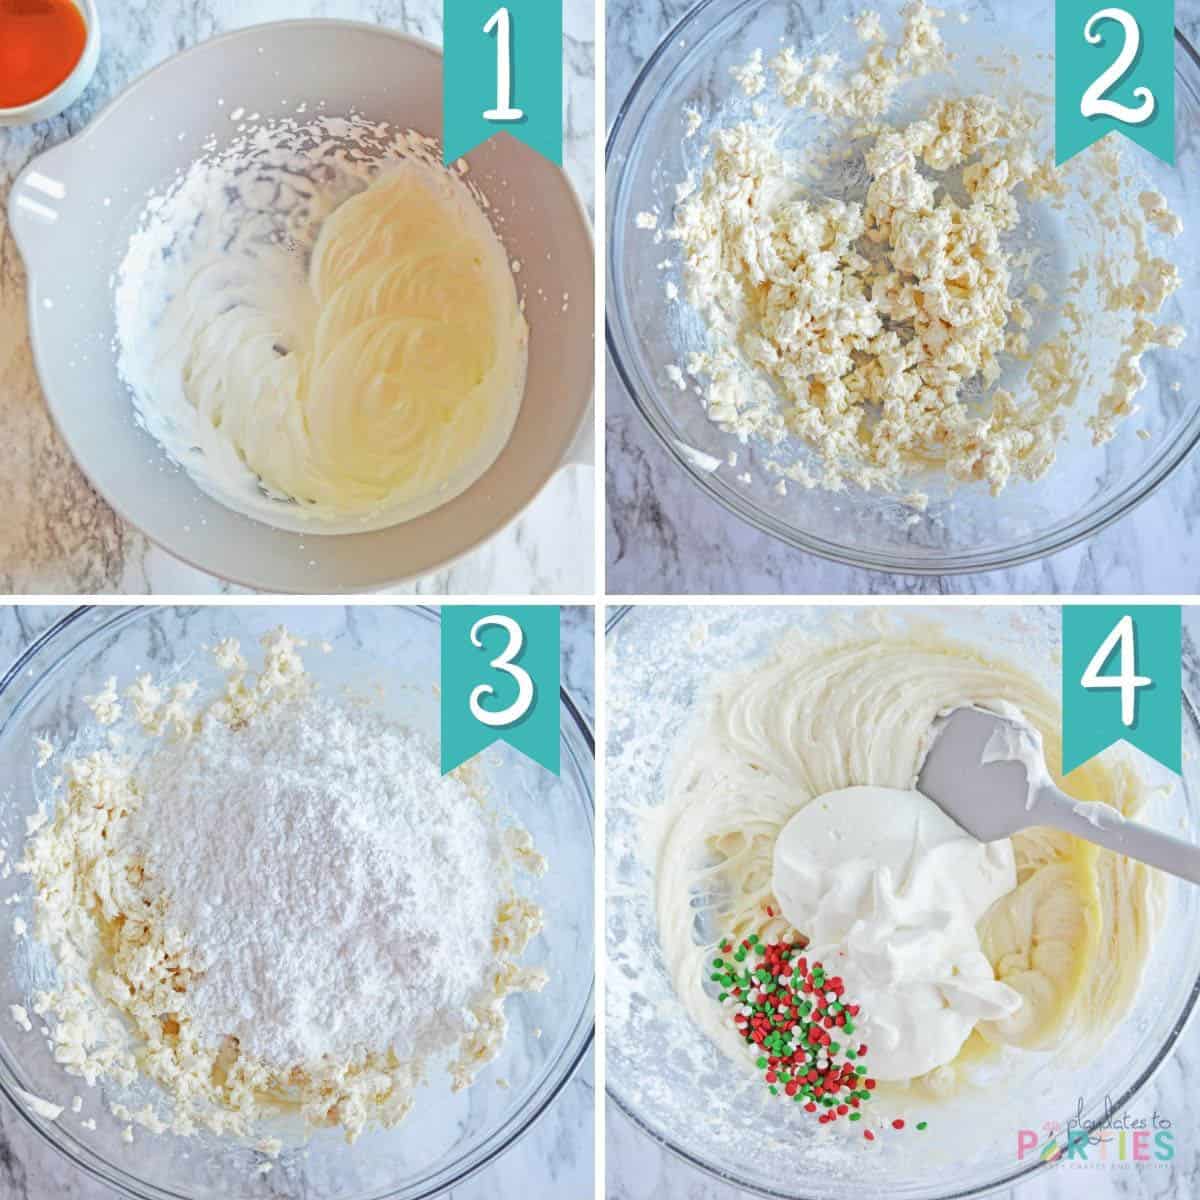 How to make sugar cookie dip in 4 steps.